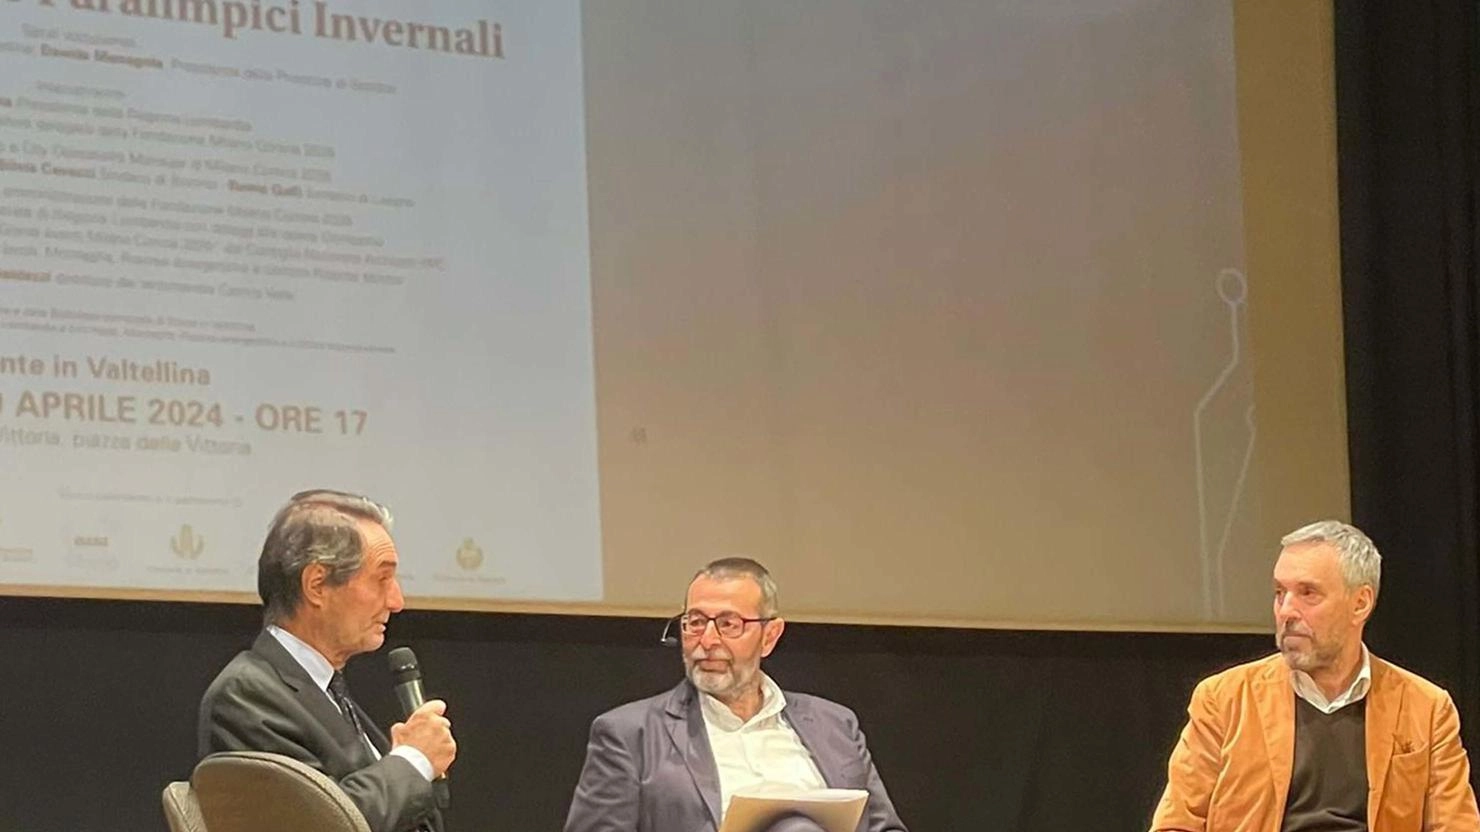 Il presidente di Regione Lombardia Attilio Fontana a Ponte al convegno “Milano Cortina 2026” "Stiamo portando avanti interventi che miglioreranno la qualità della vita del territorio" .